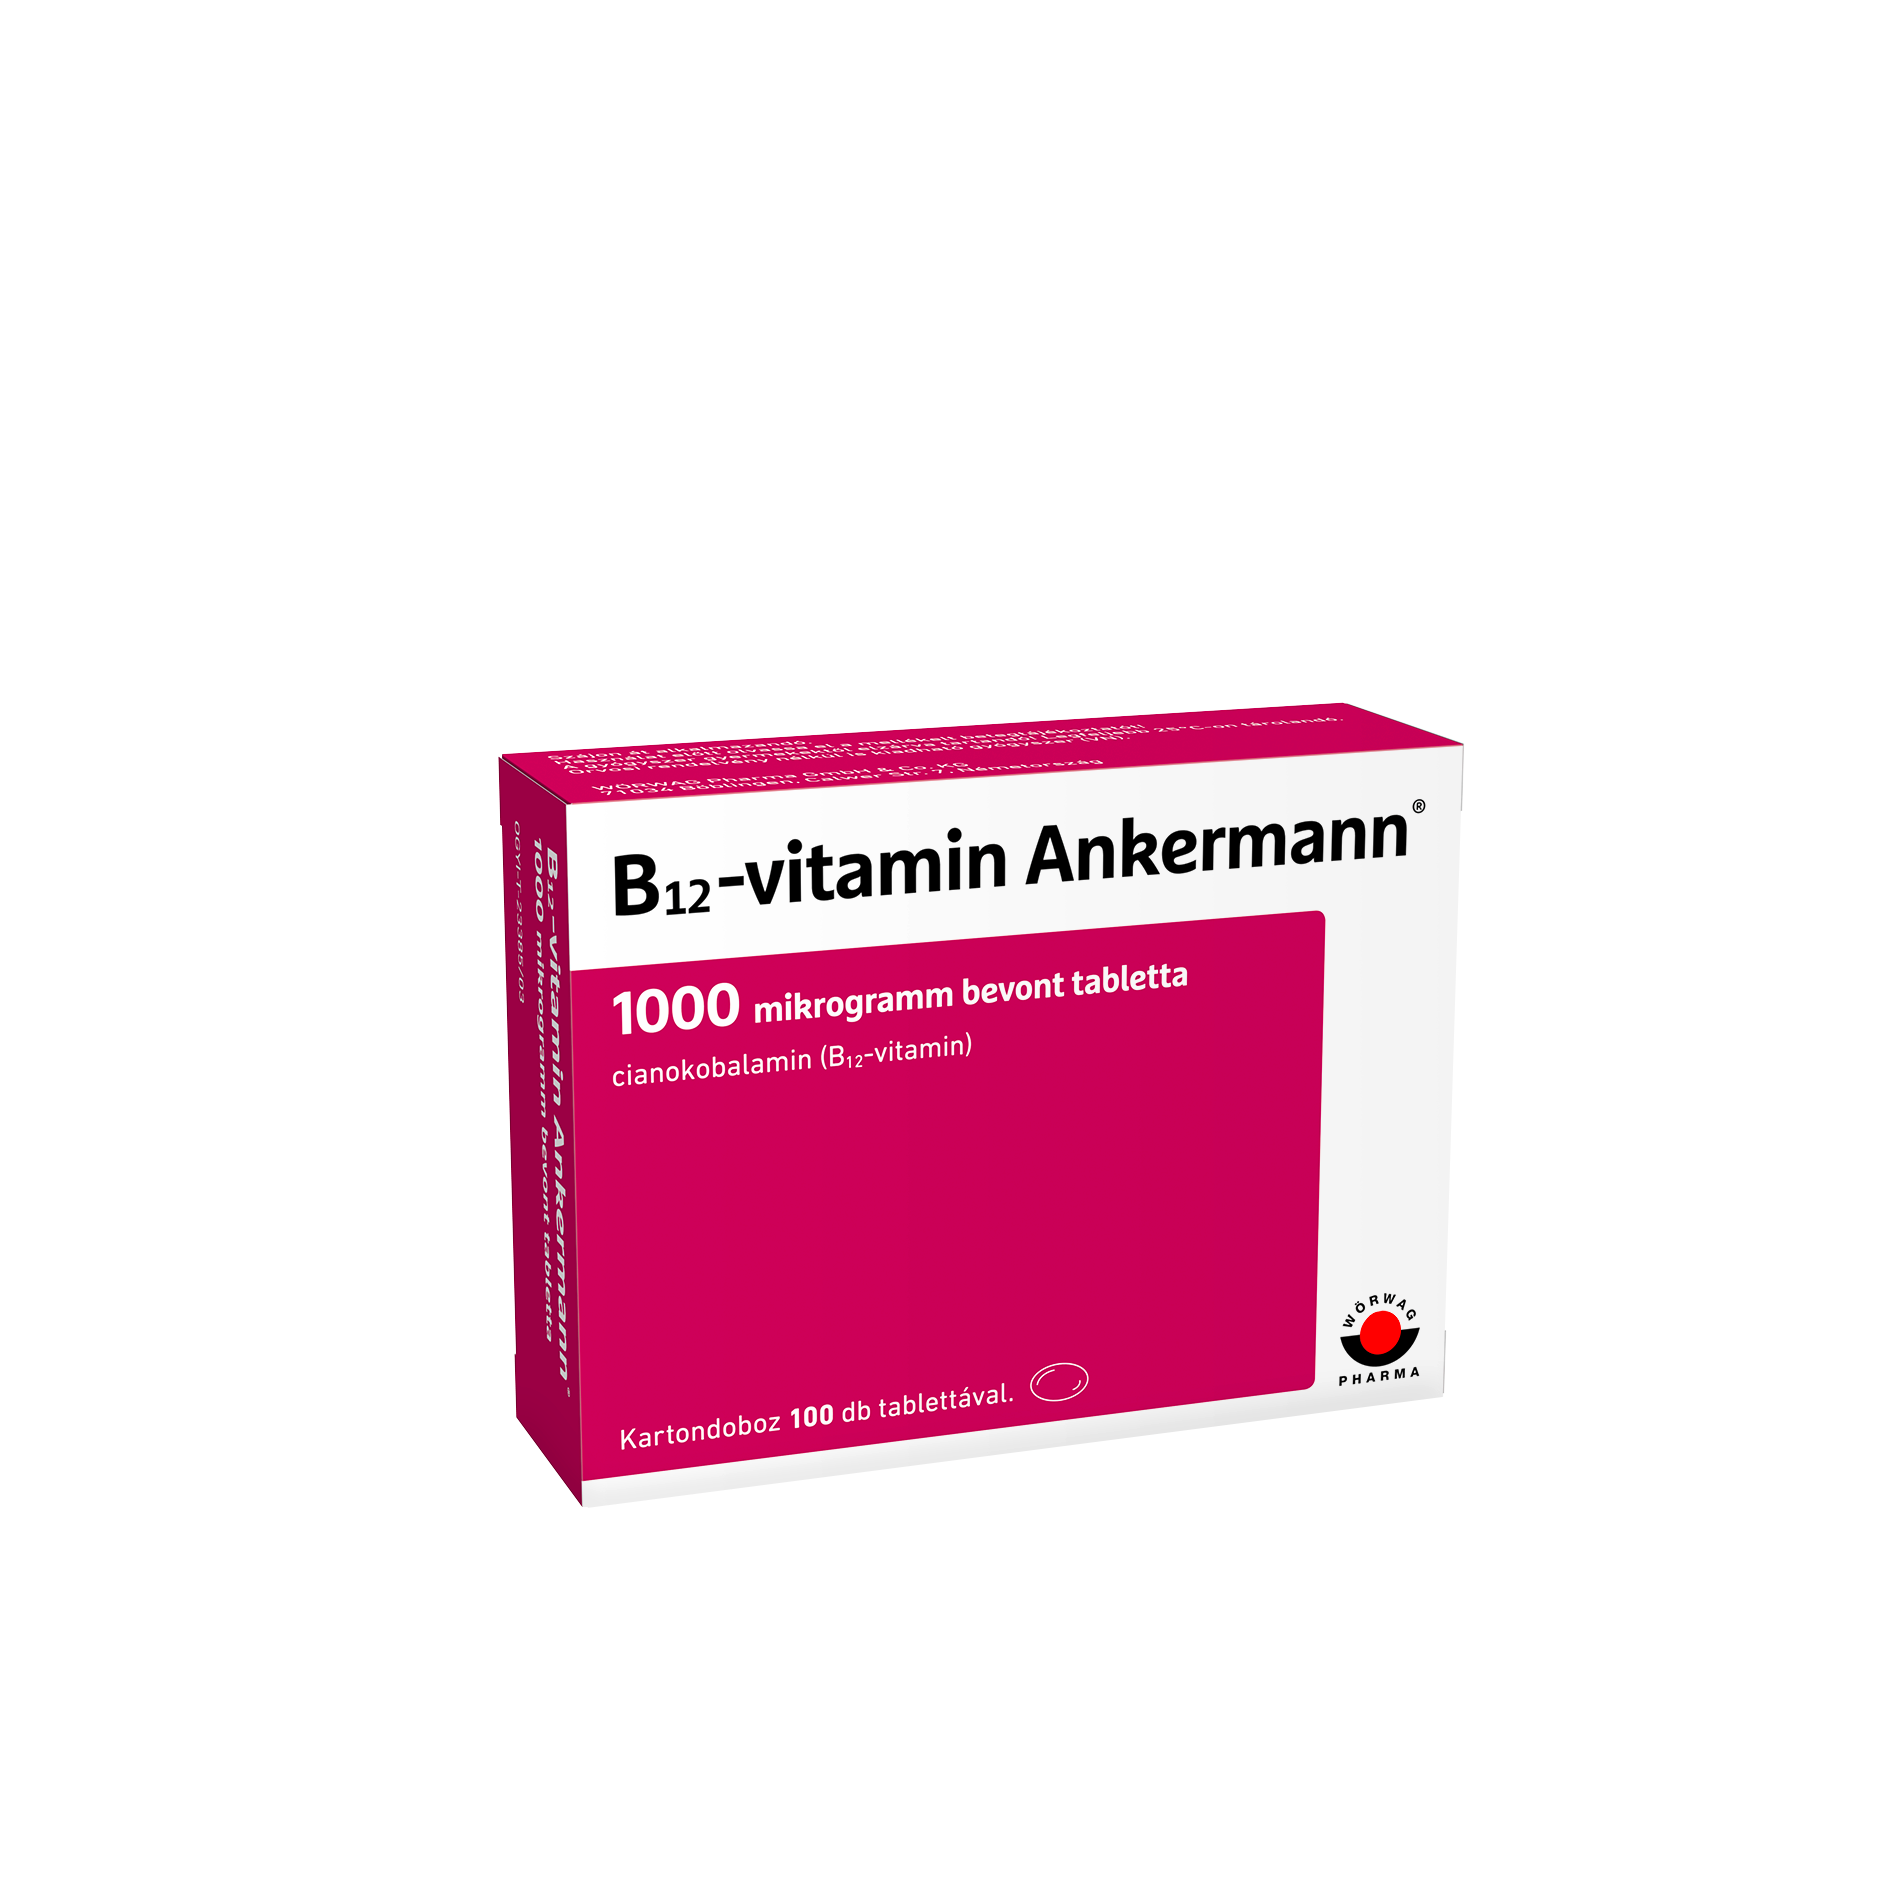 B12-vitamin Ankermann 1000 mikrogramm bevont tabletta 